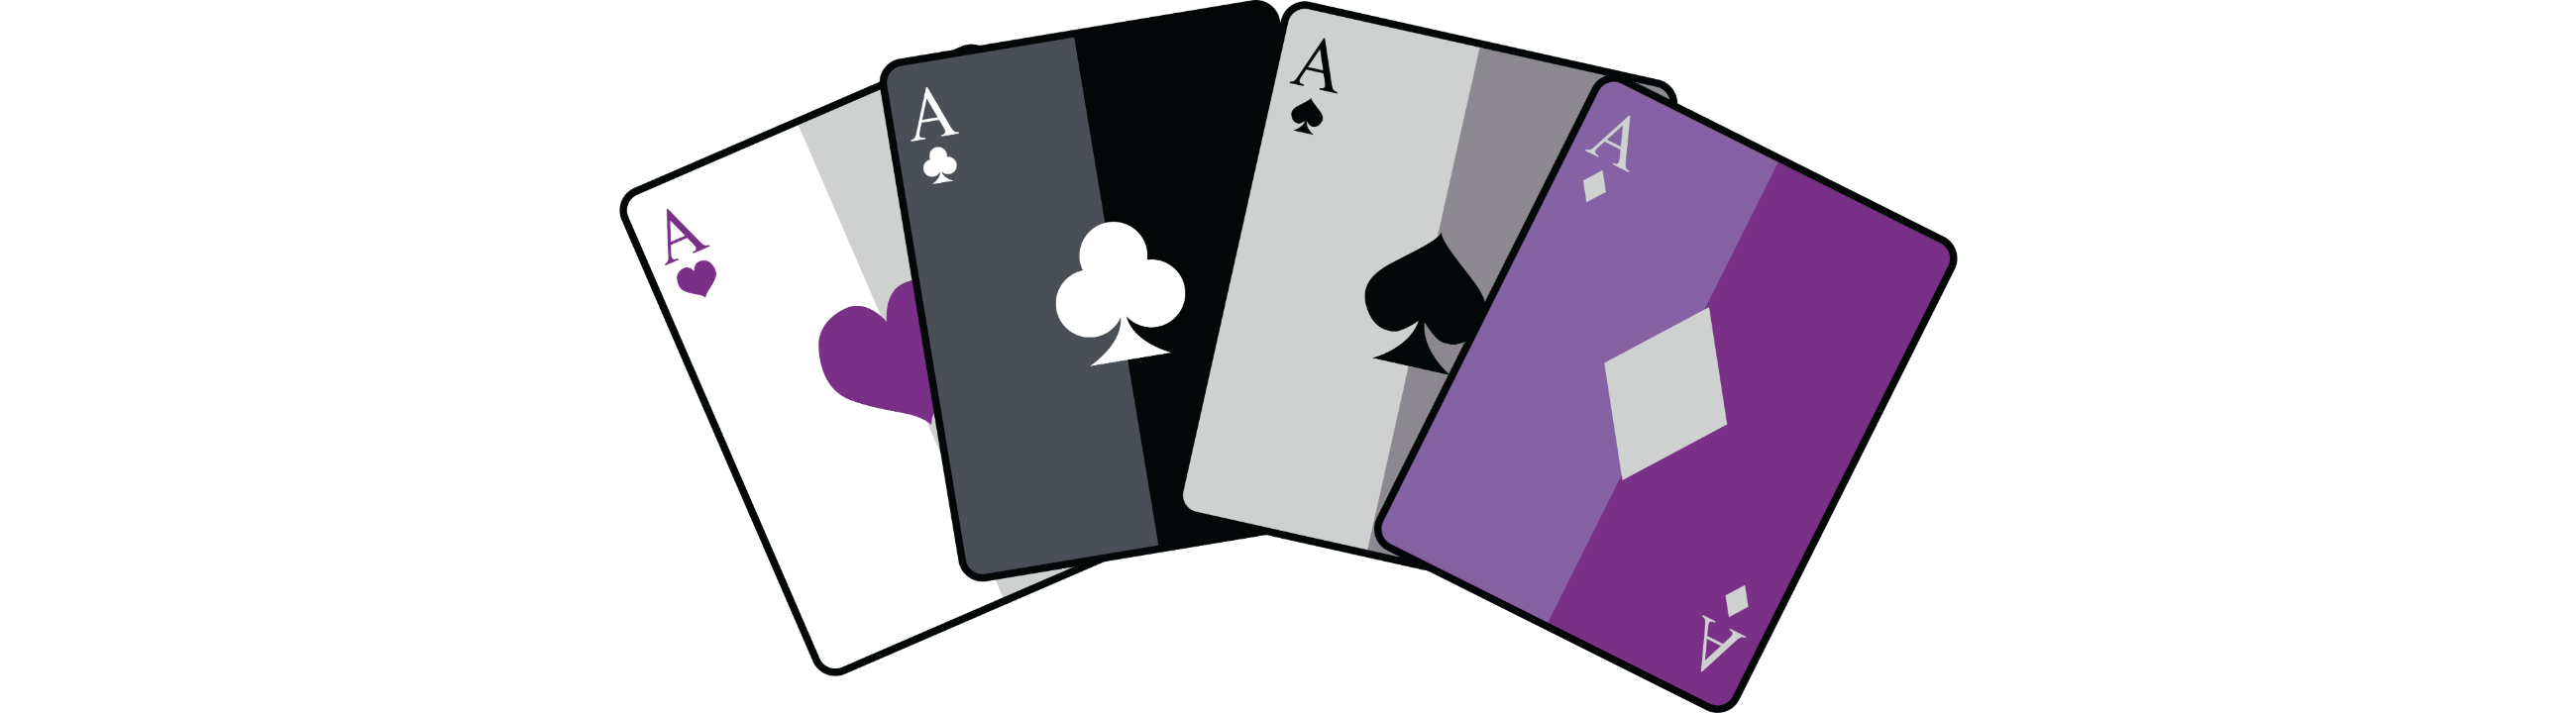 Asexual Spielkarten